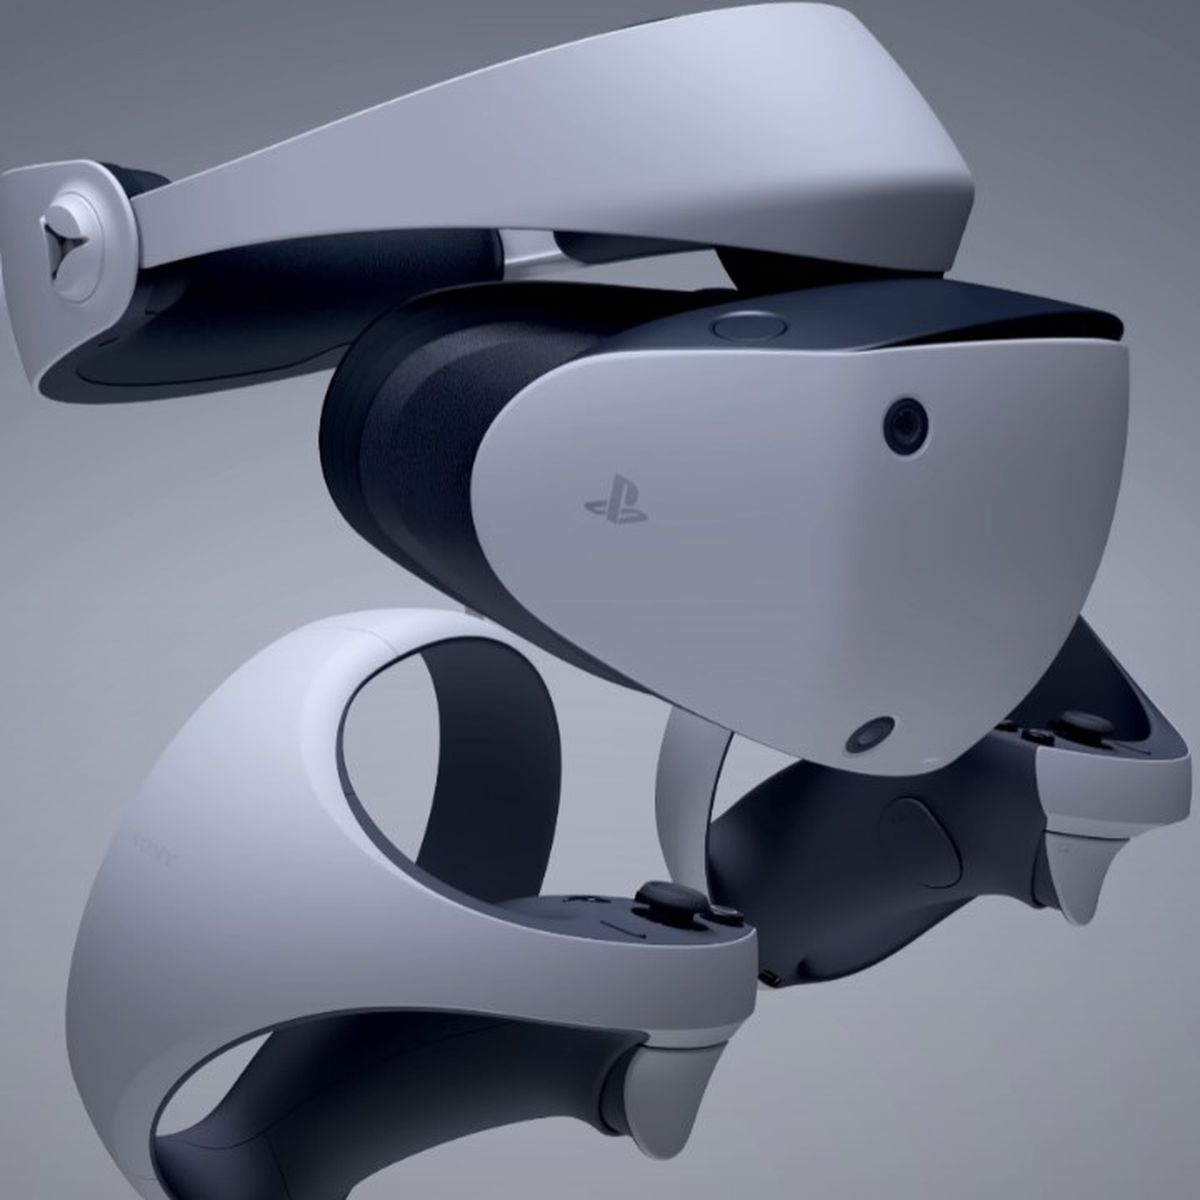 Precio y fecha de lanzamiento de las nuevas gafas PS VR2 de PlayStation 5